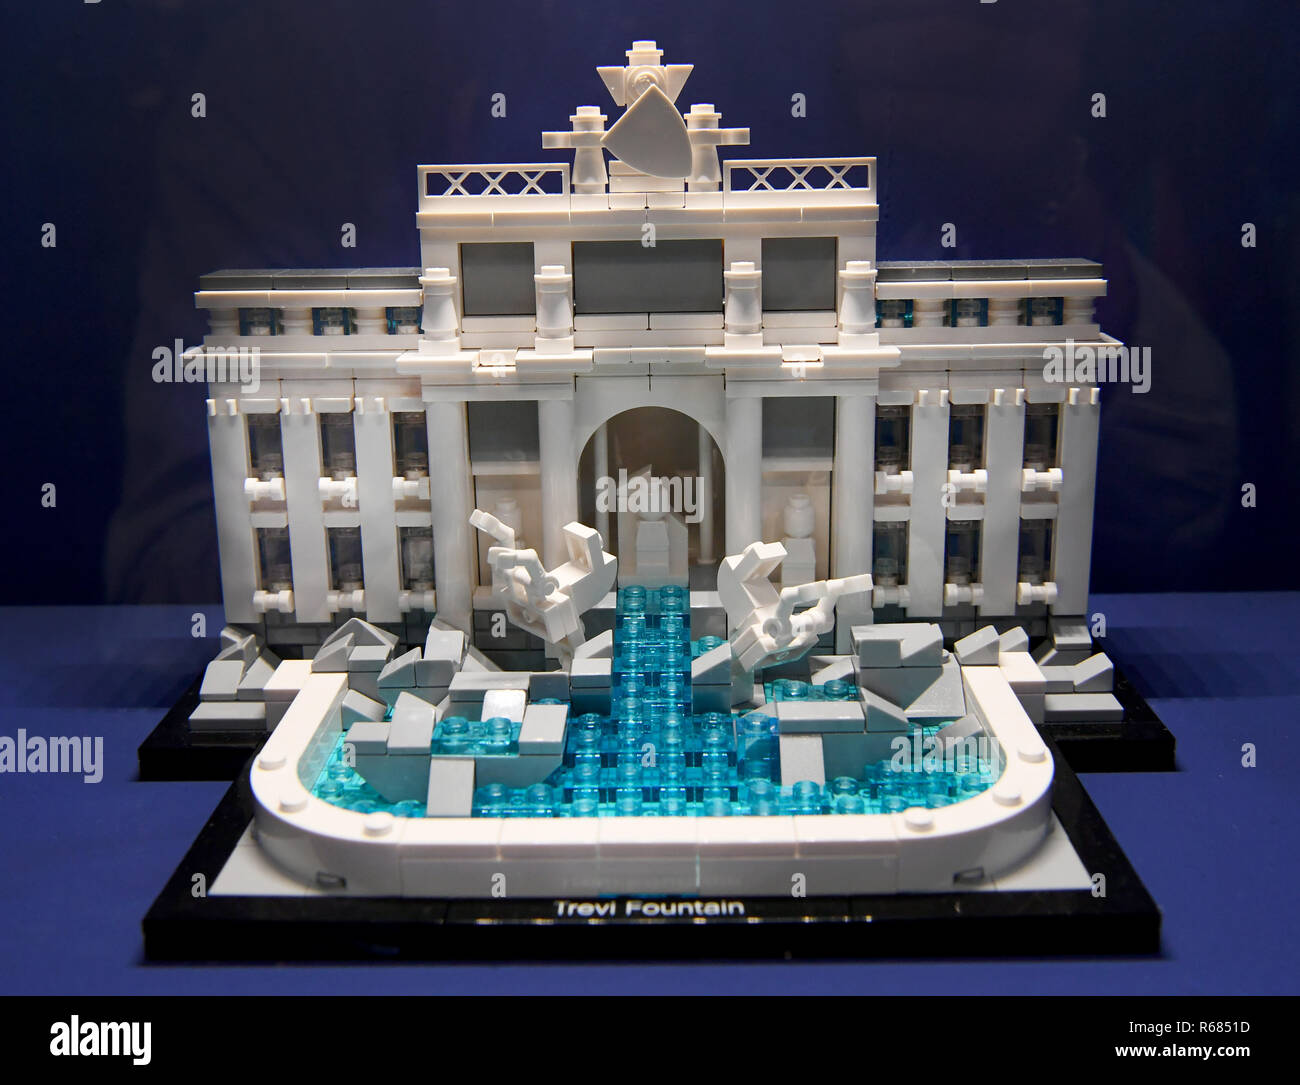 04 décembre 2018, Basse-Saxe, celle : la fontaine de Trevi, faite de  briques Lego, est présentée dans le musée par démenagement dans celle. Un  millier de modèles ont été mis en place